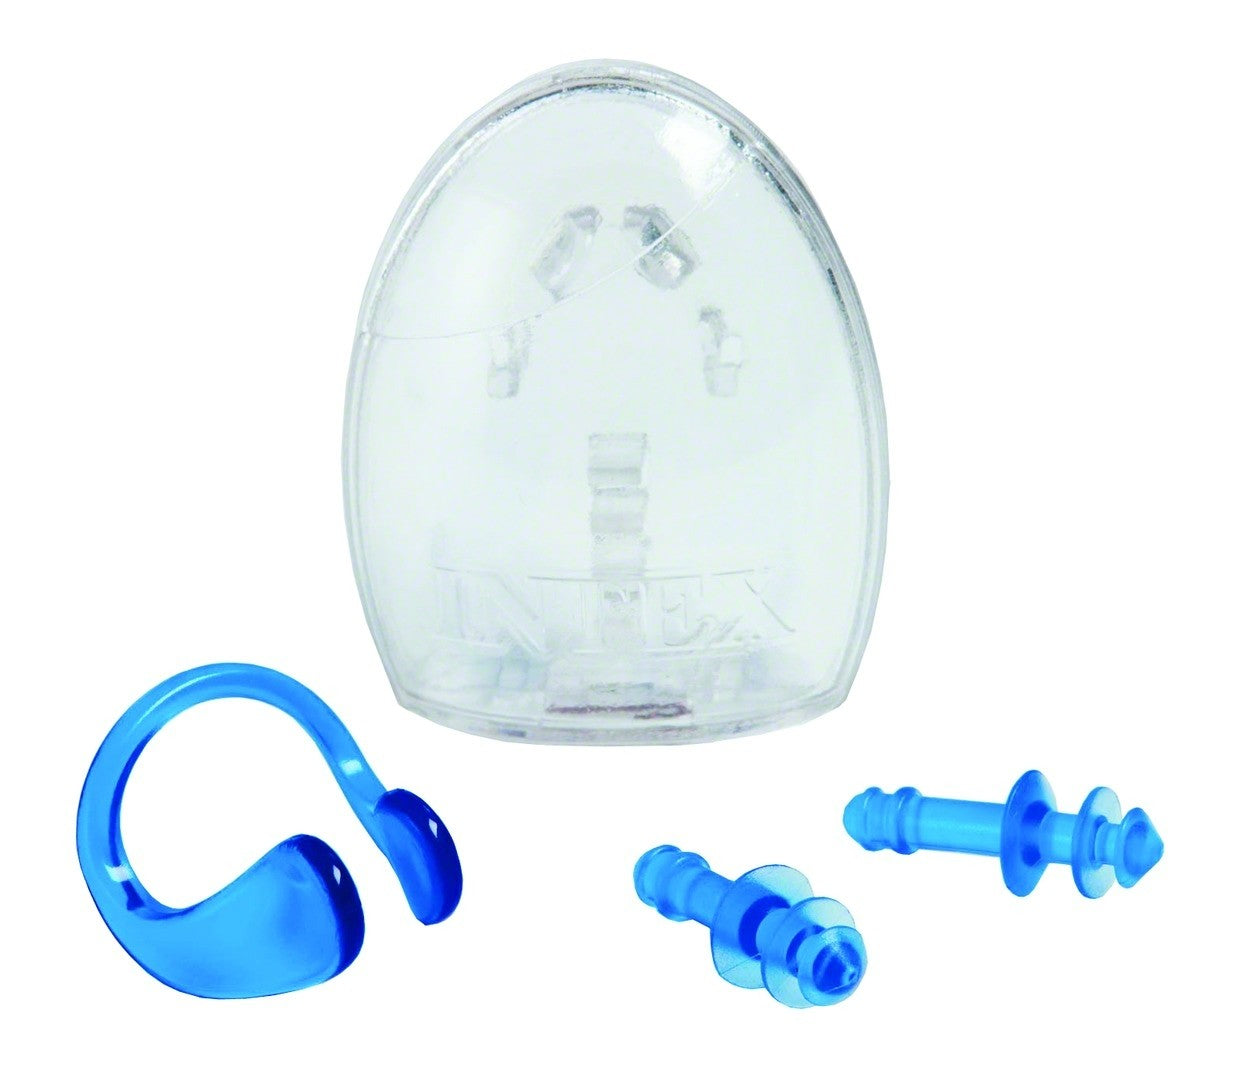 Intex Ear Plug and Nose Clip Combo Set